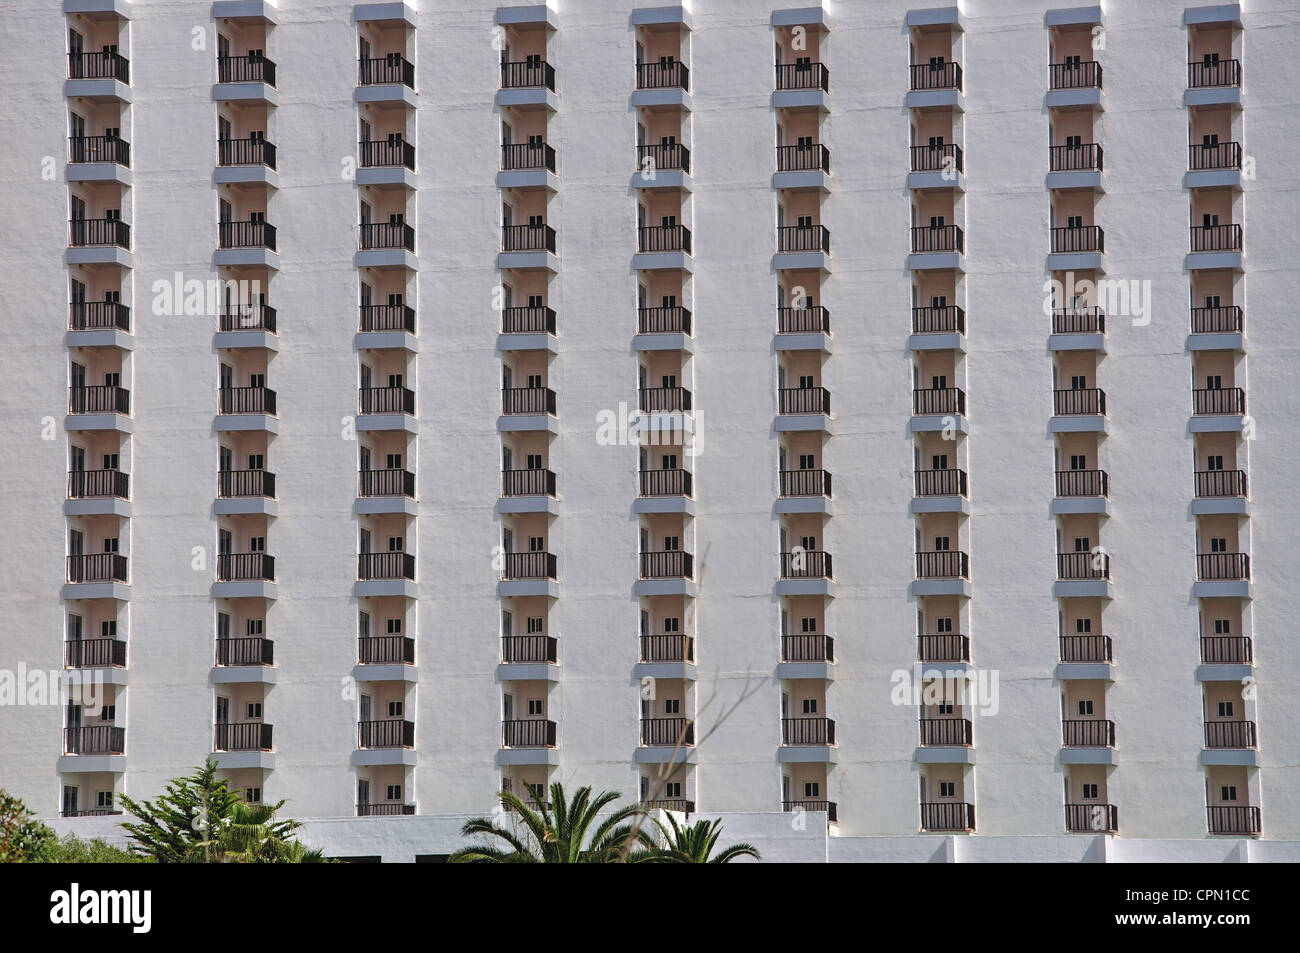 Alto hotel e balconi, Son Bou, Menorca, isole Baleari, Spagna Foto Stock